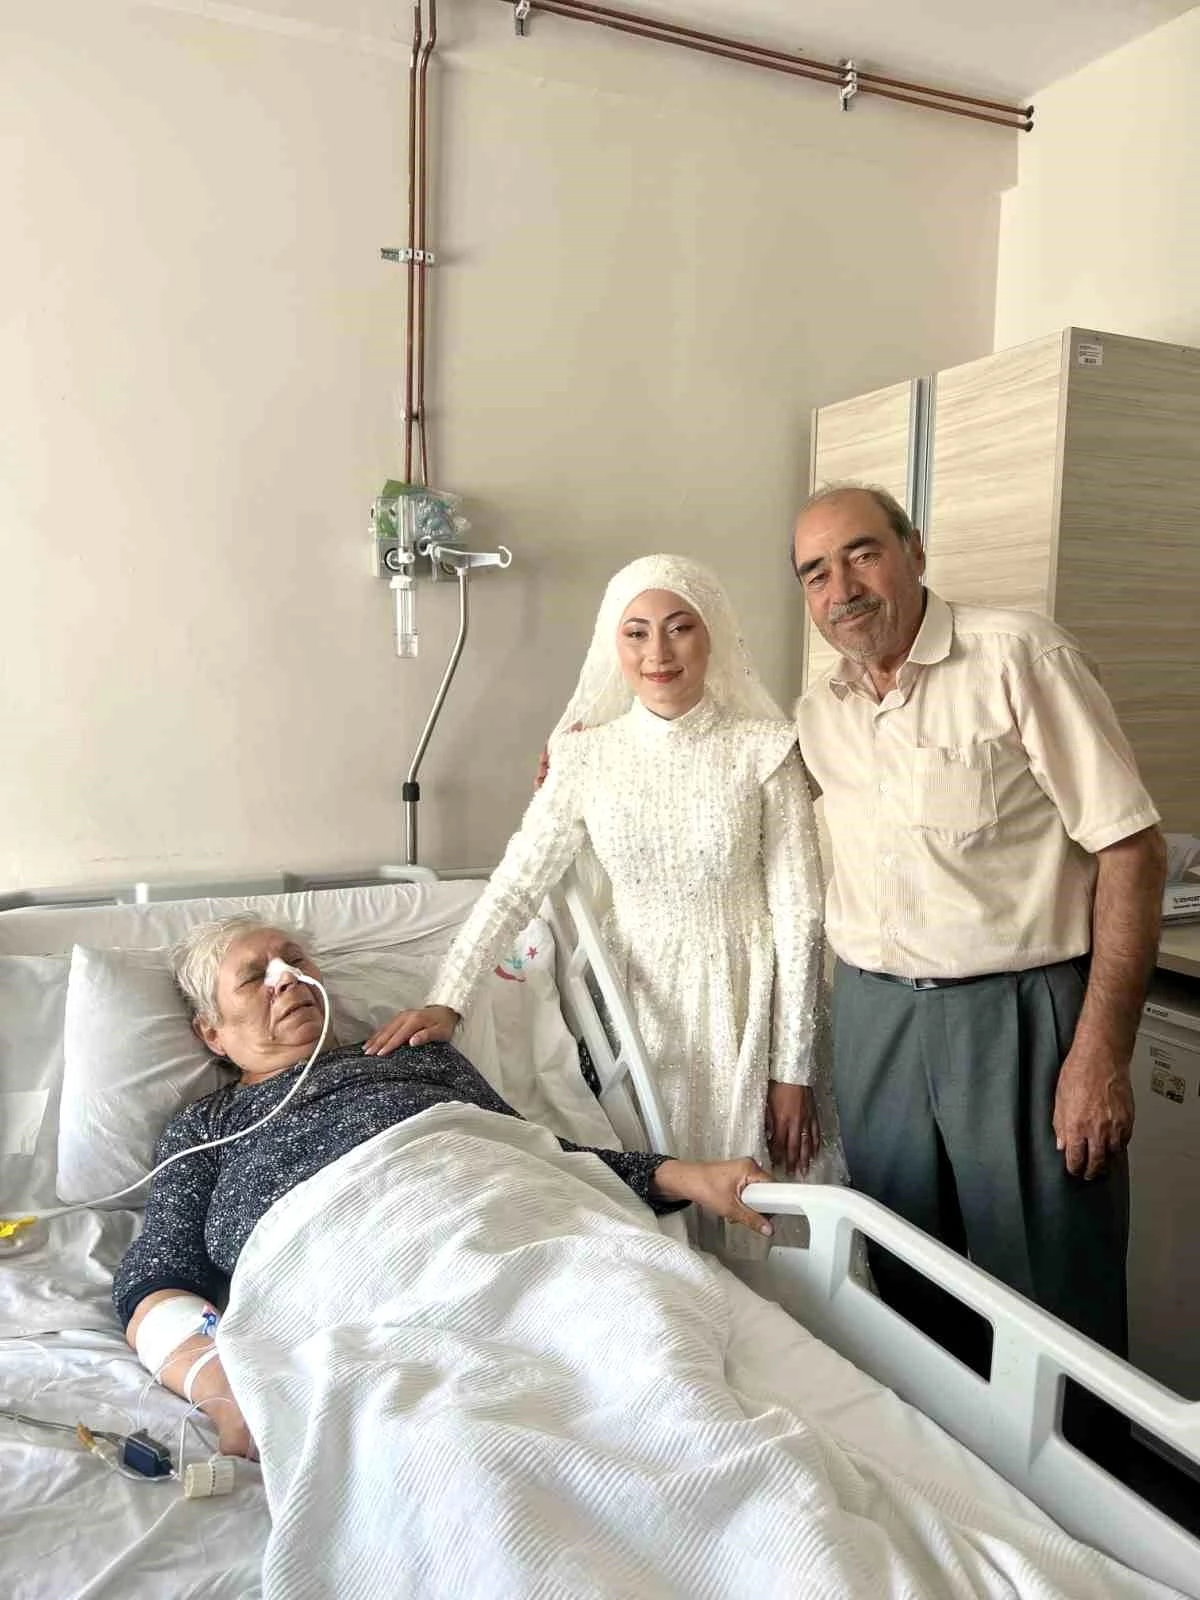 Torununun düğününe katılmak için Bursa'ya gelen yaşlı kadın hastaneye kaldırıldı